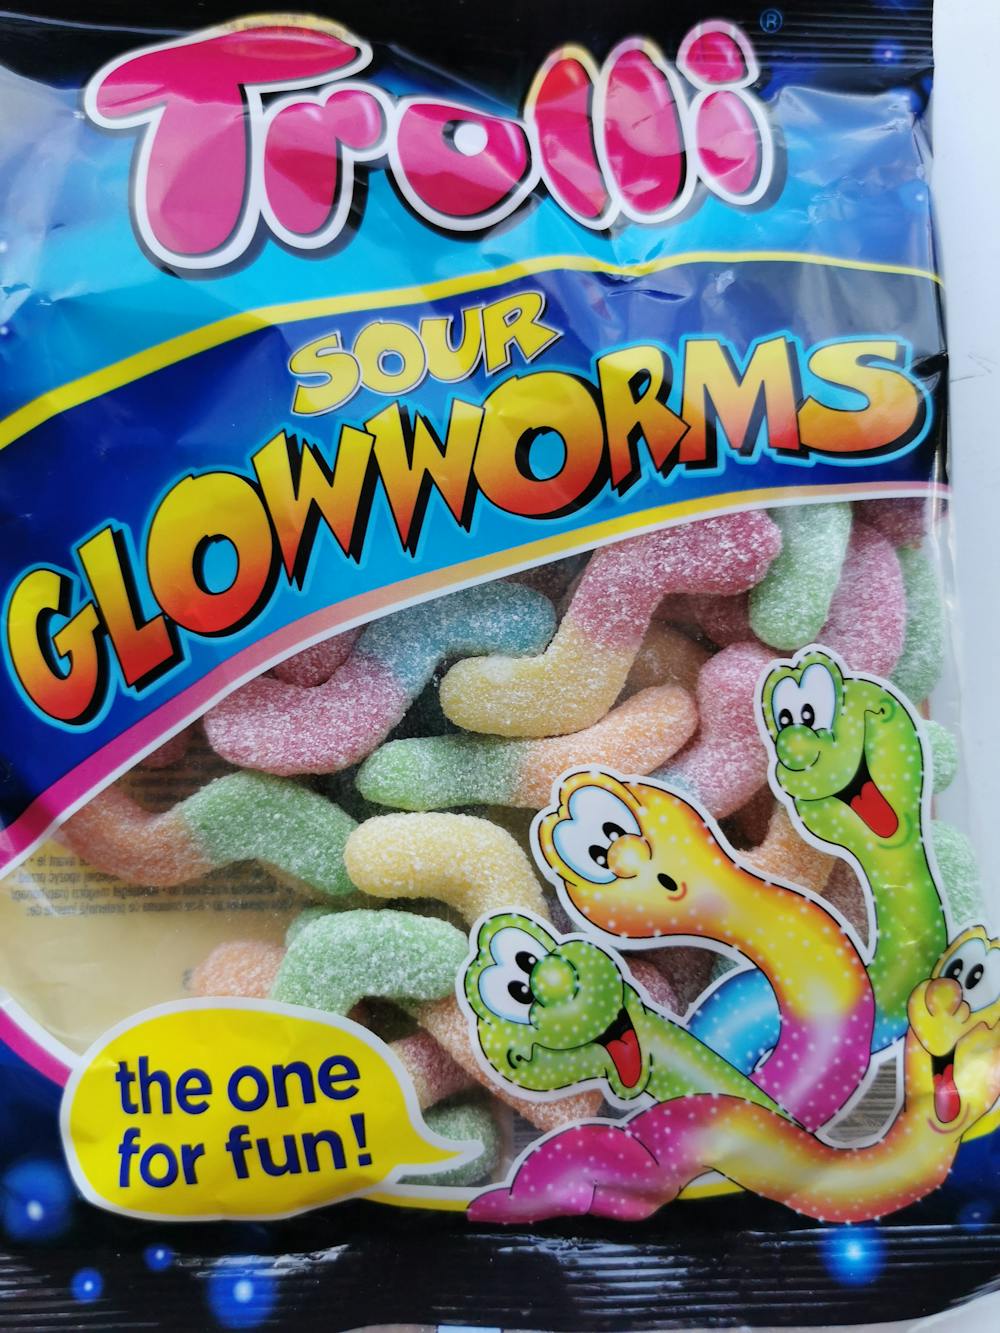 Sour glowworms, Trolli